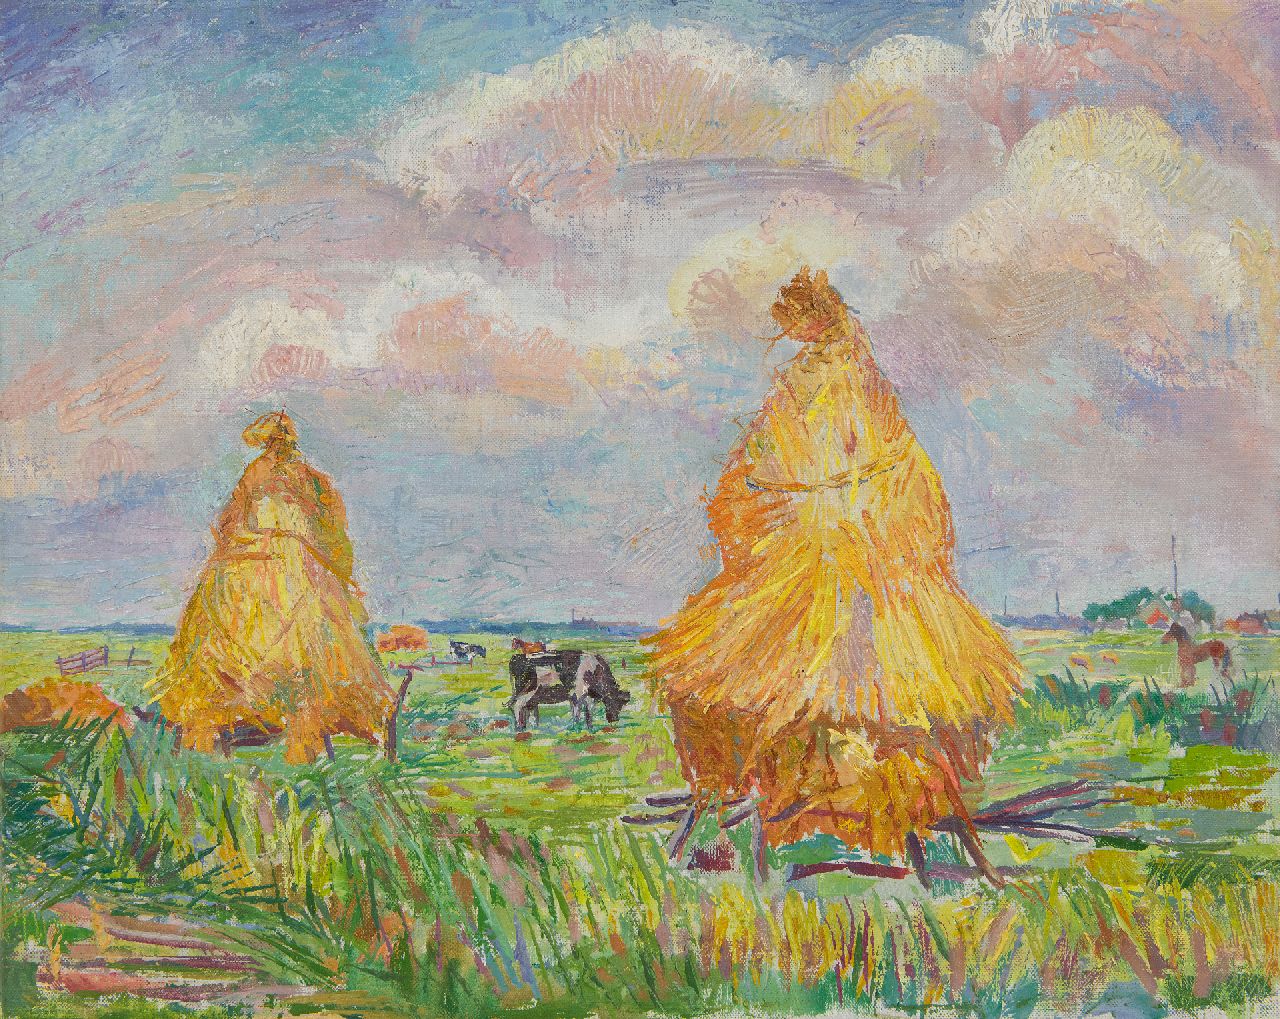 Pijpers E.E.  | 'Edith' Elizabeth Pijpers, Hooimijten in het veld, olieverf op doek 36,9 x 45,8 cm